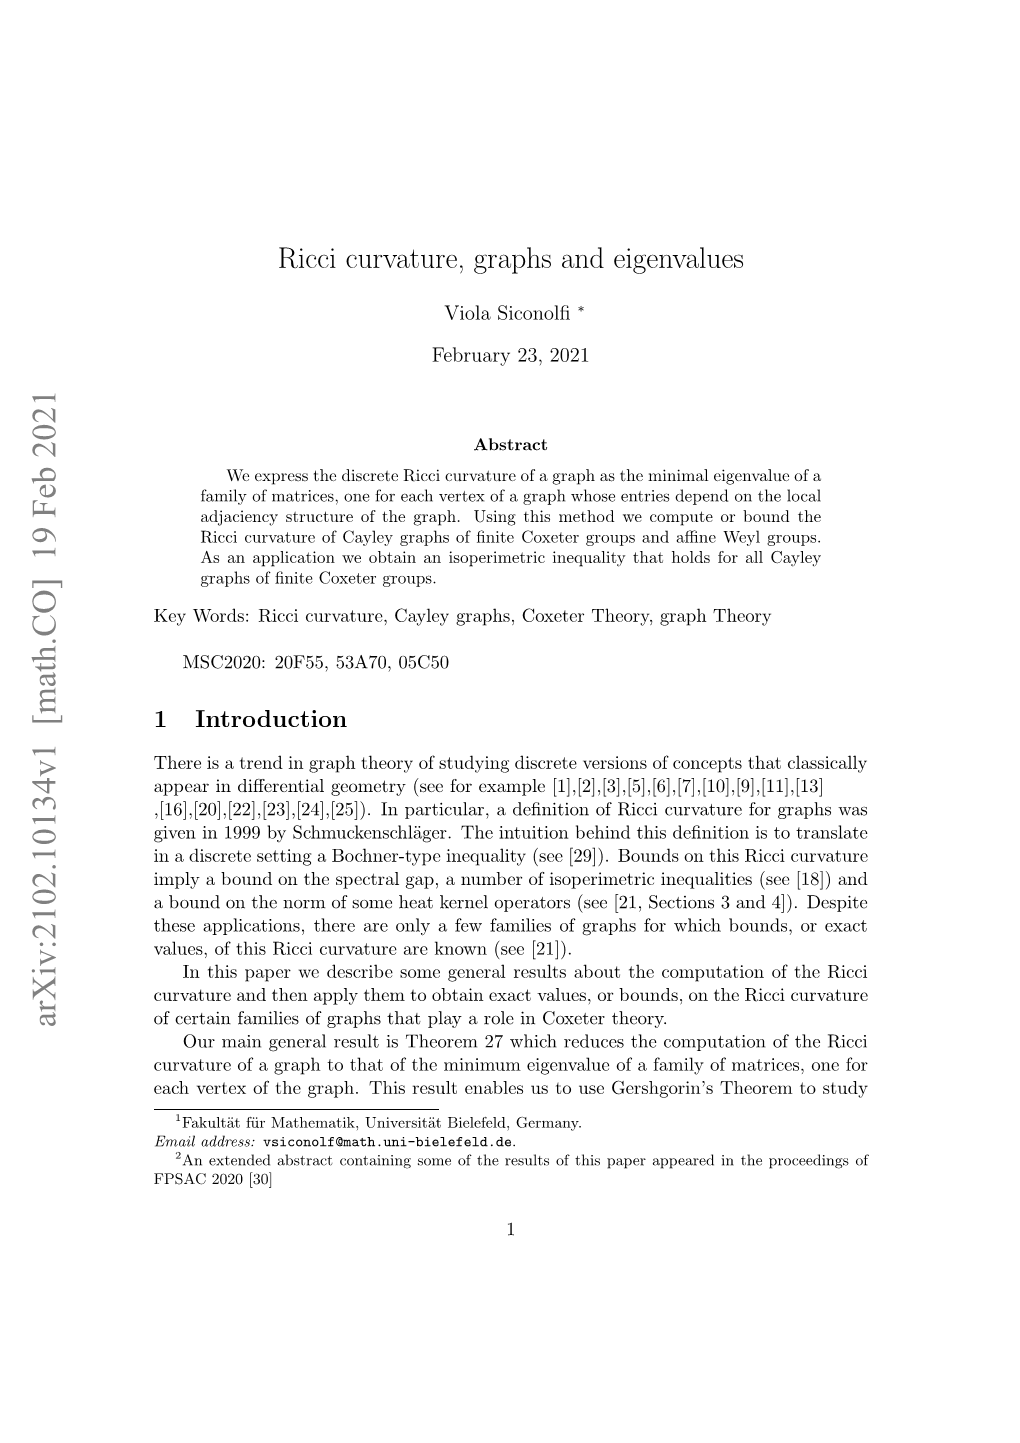 Ricci Curvature, Graphs and Eigenvalues